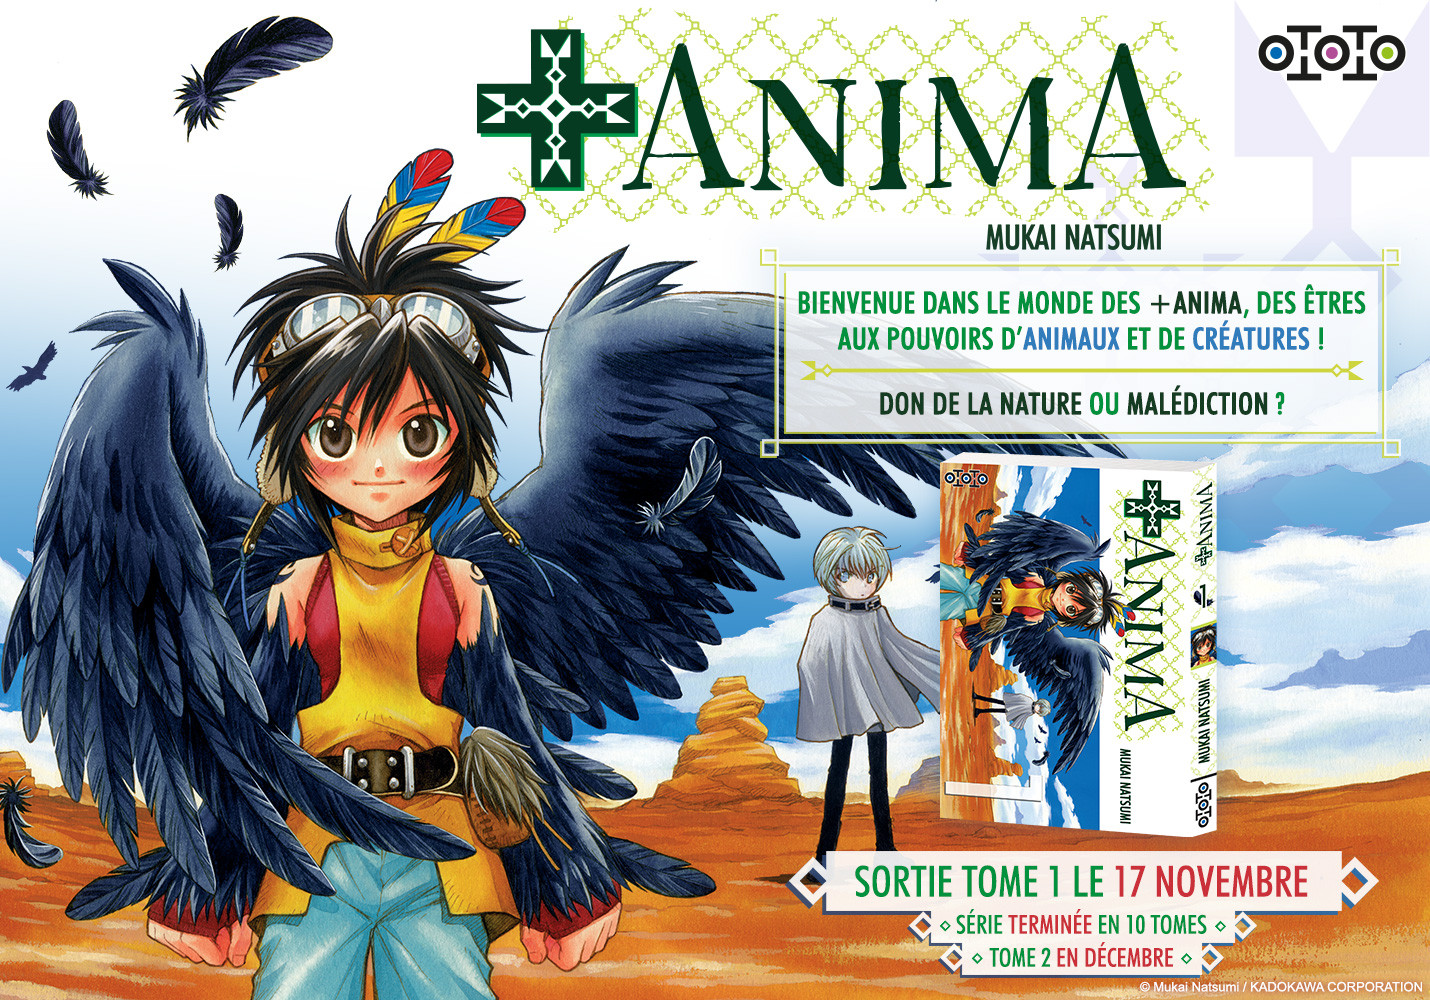 Couverture de +Anima, édition spéciale 2023, révélant les personnages principaux dans un style artistique vibrant